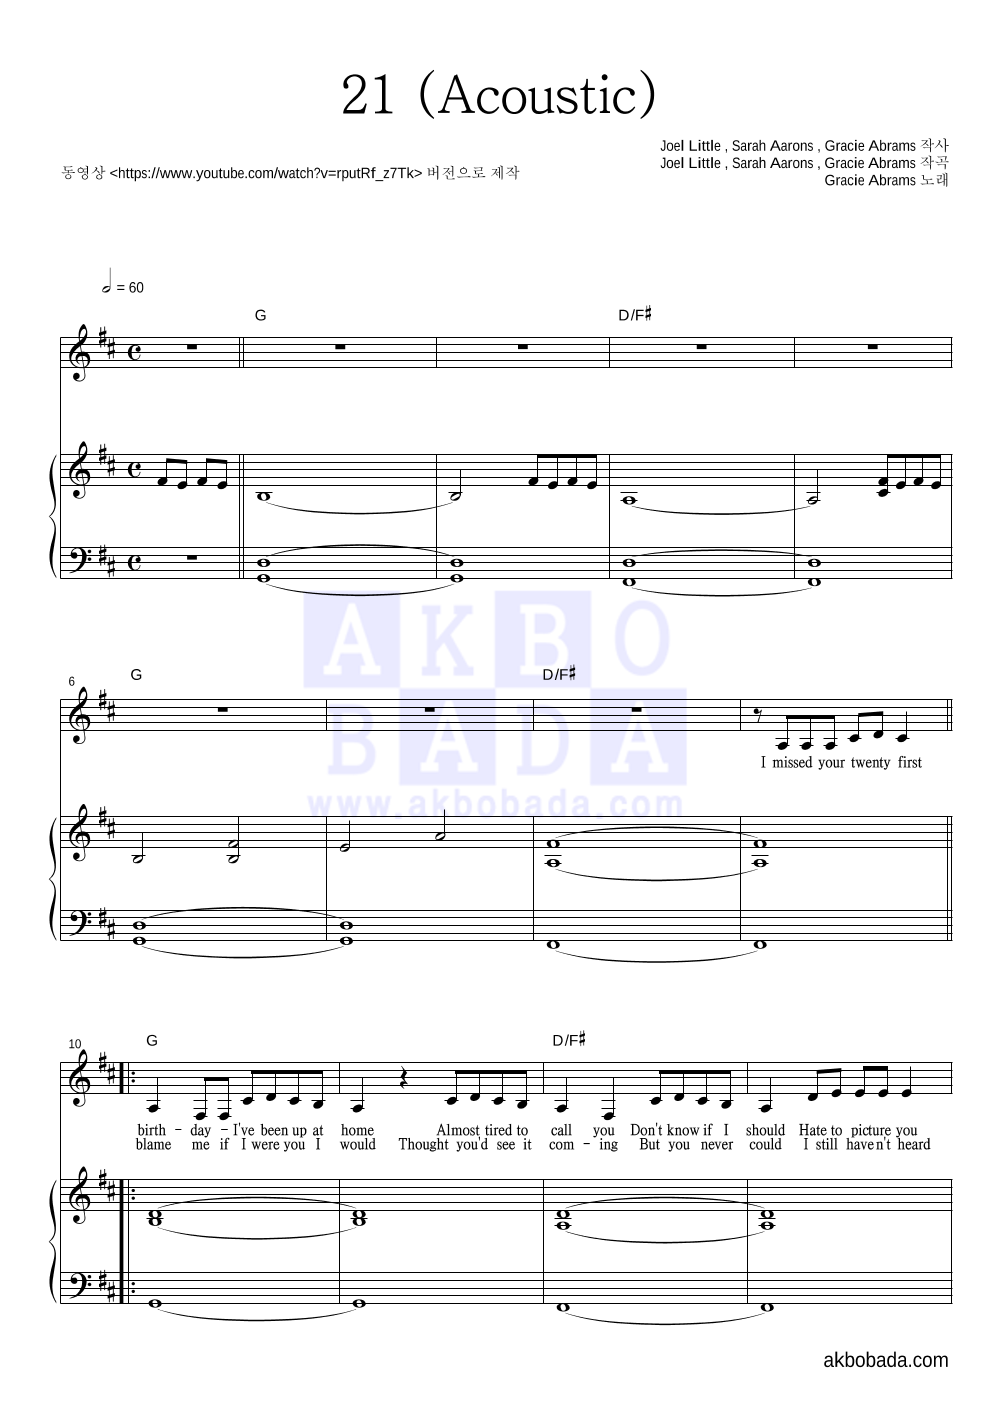 Gracie Abrams - 21 (Acoustic) 피아노 3단 악보 